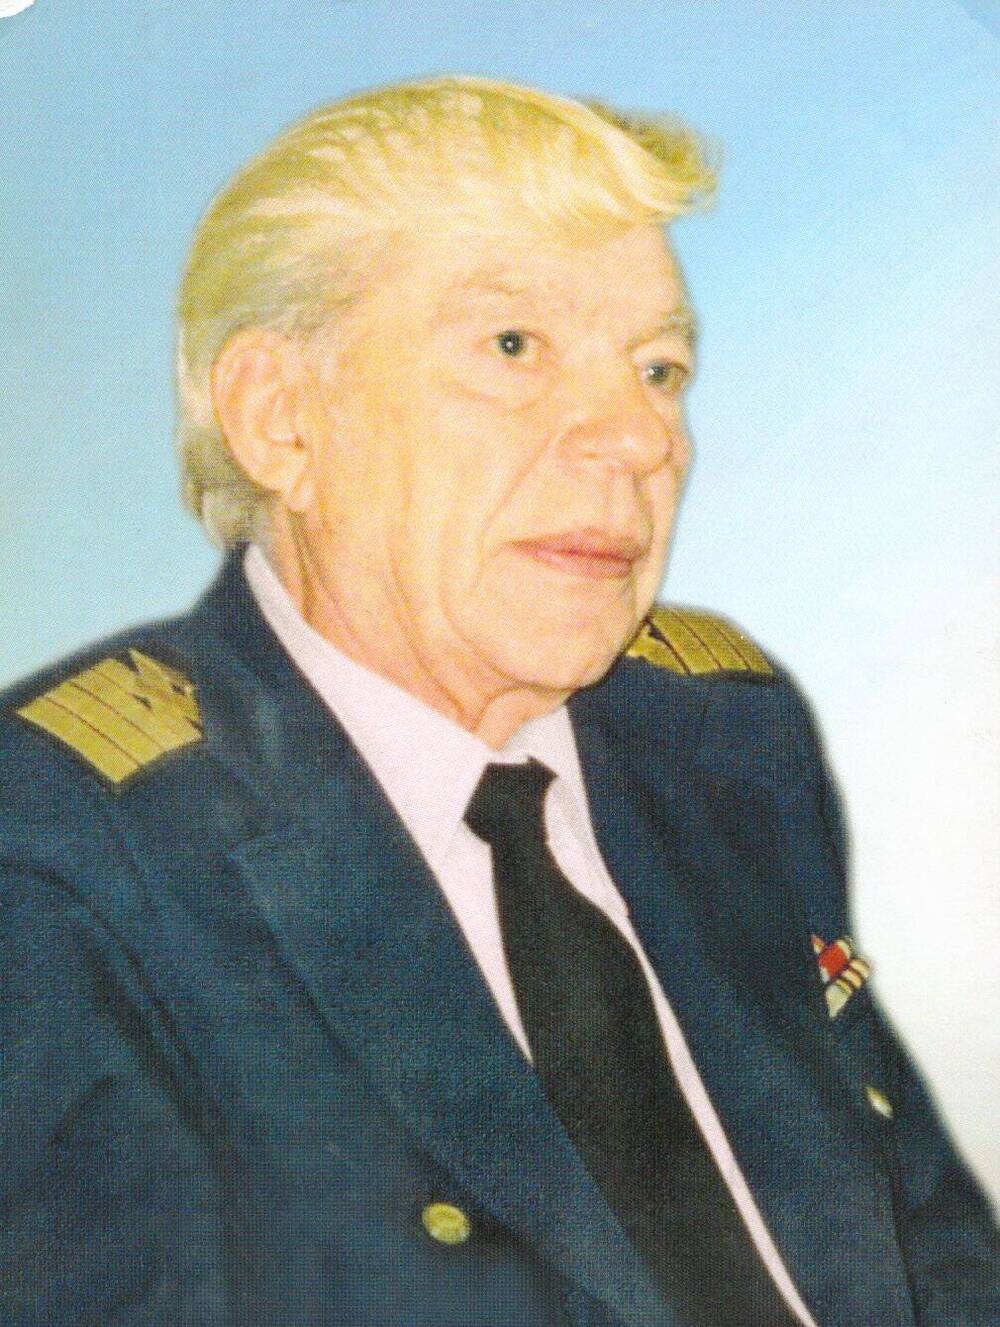 Дорошенко Петр Афанасьевич - юнга огненных лет, ветеран Великой Отечественной войны.